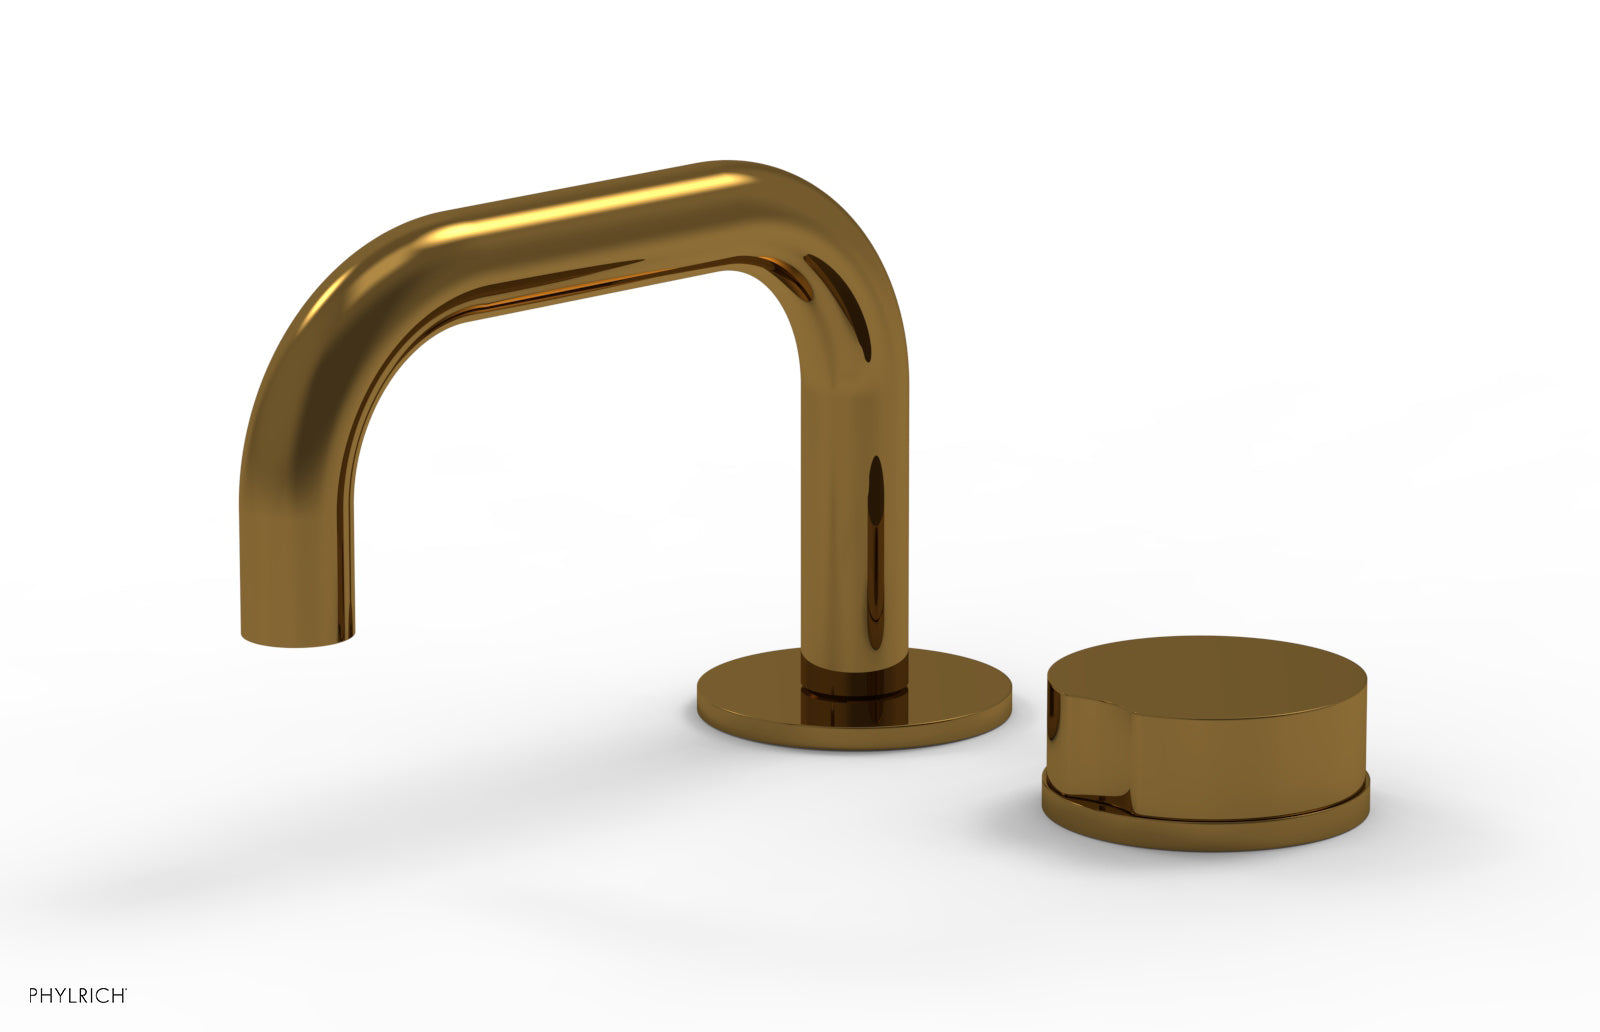 Phylrich CIRC Single Handle Faucet - Low Spout